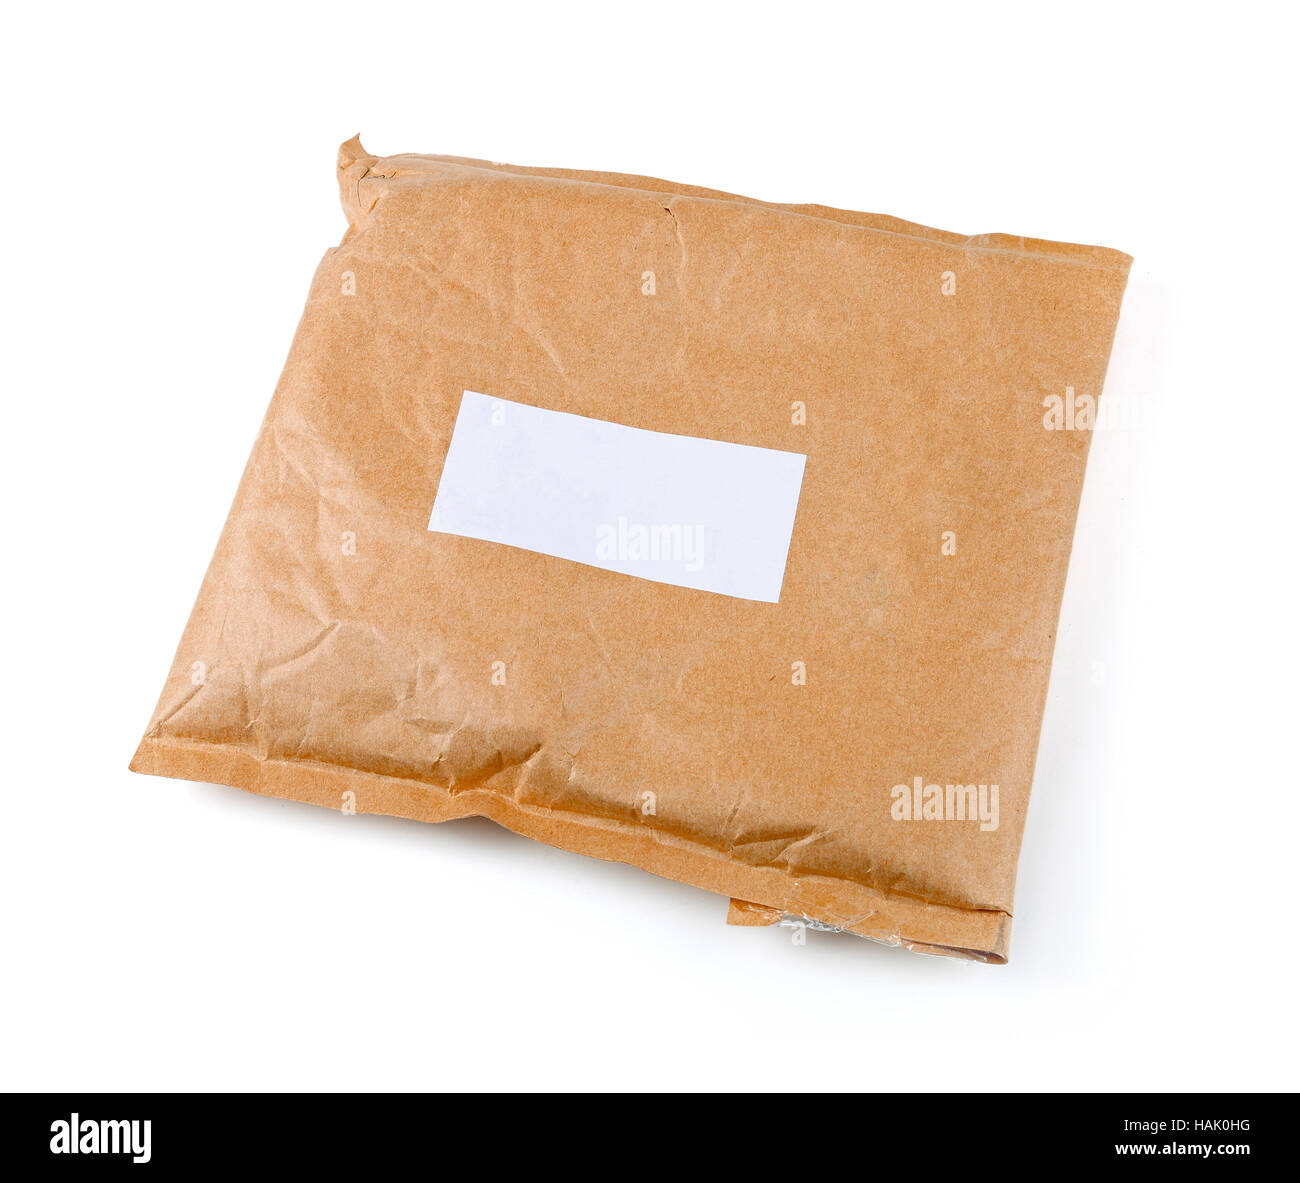 kleine Papier-Post-Paket mit leere Beschriftung isoliert auf weiss  Stockfotografie - Alamy